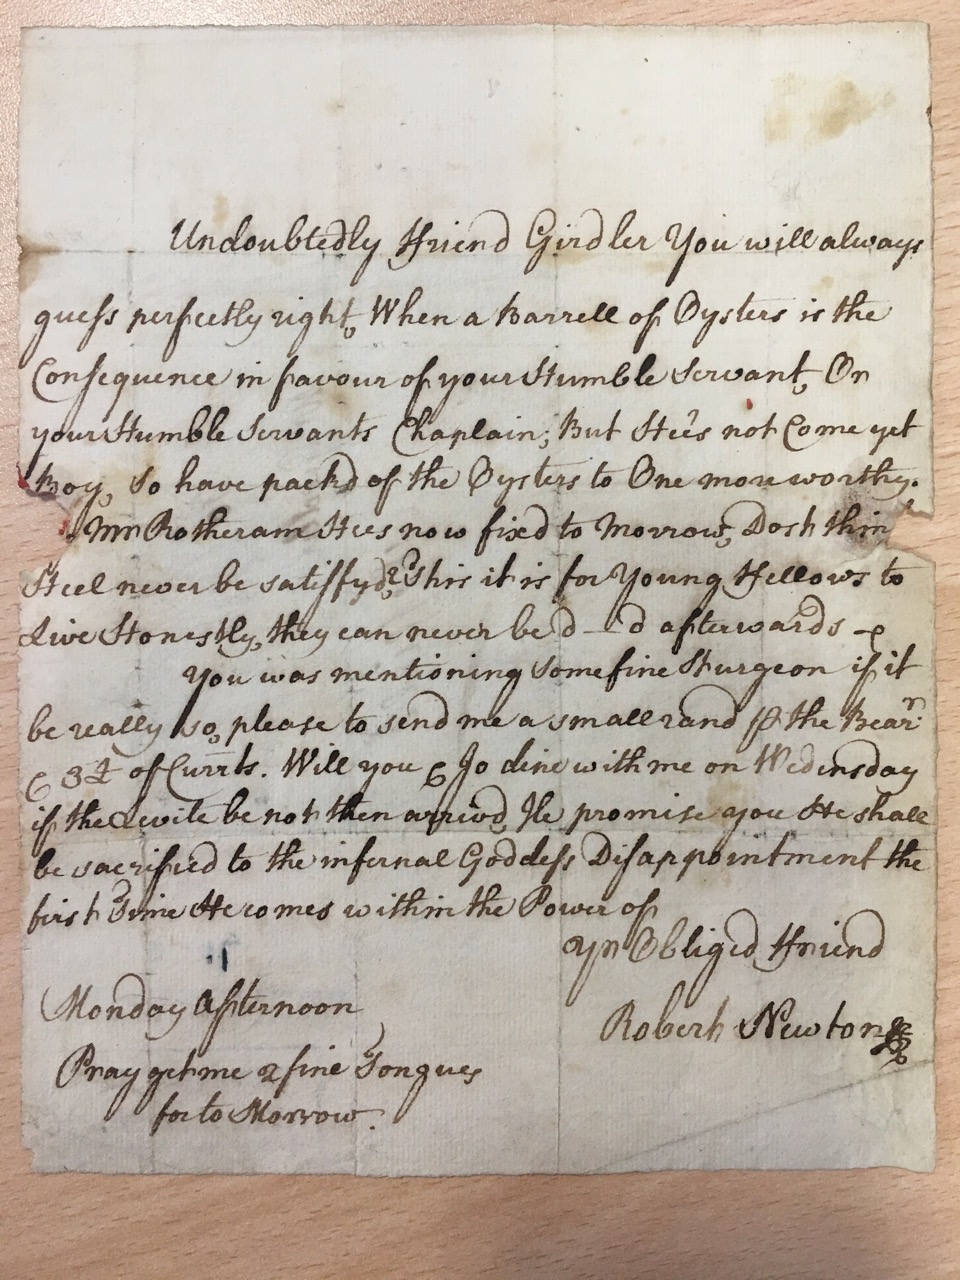 Image #1 of letter: Robert Newton to John Girdler, undated